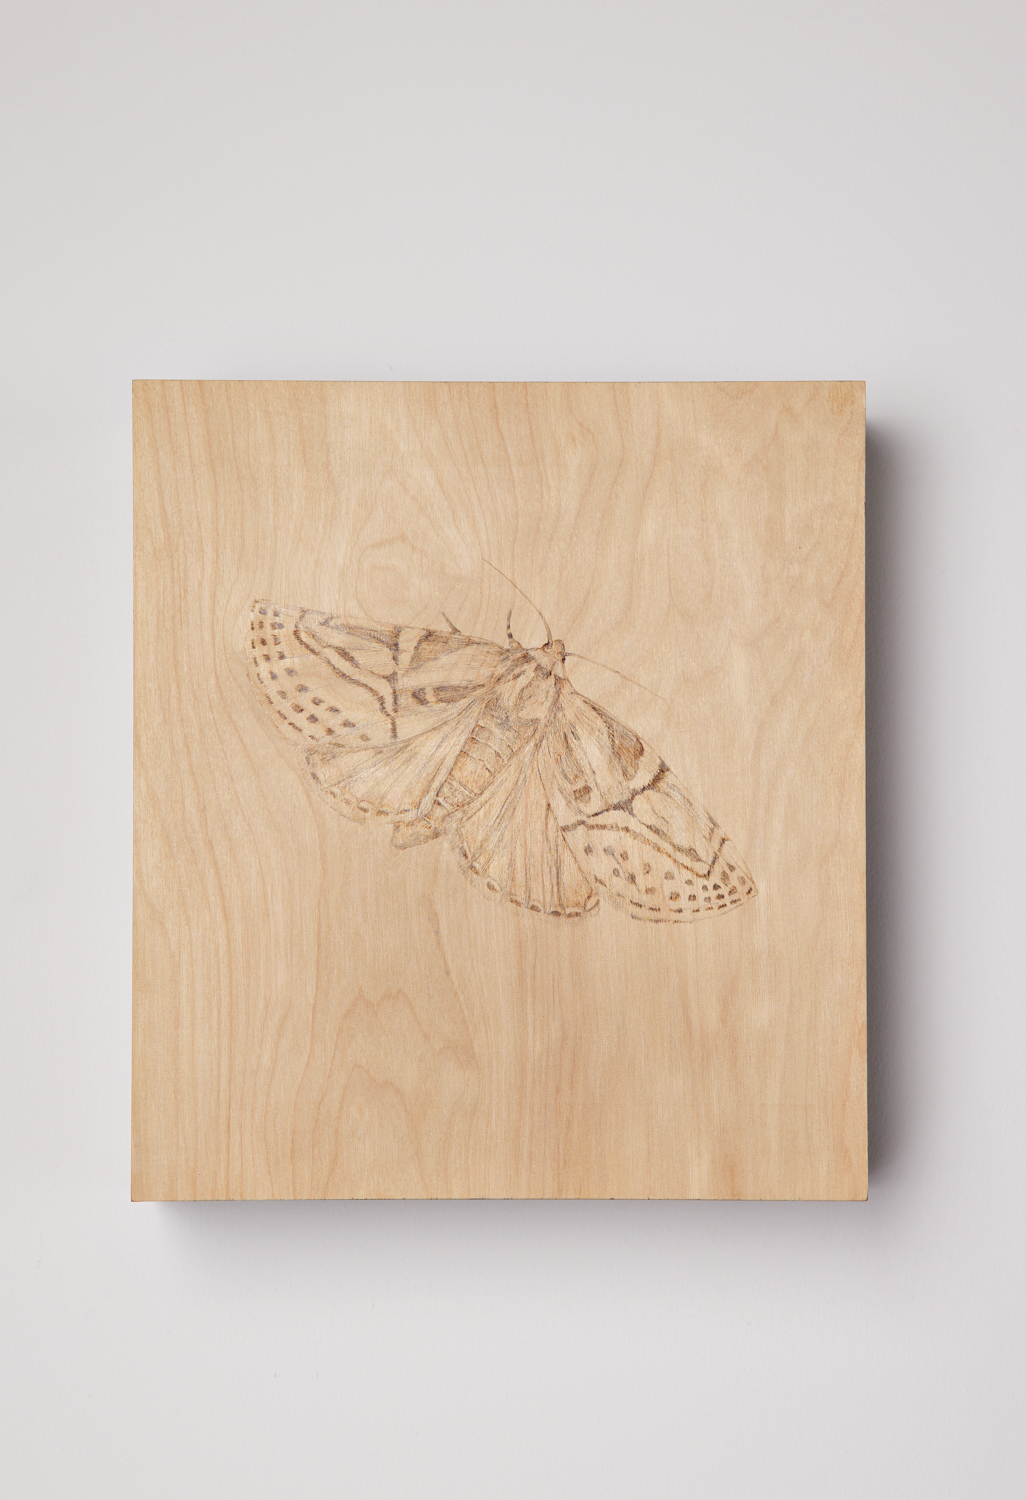 A moth drawn on wood.